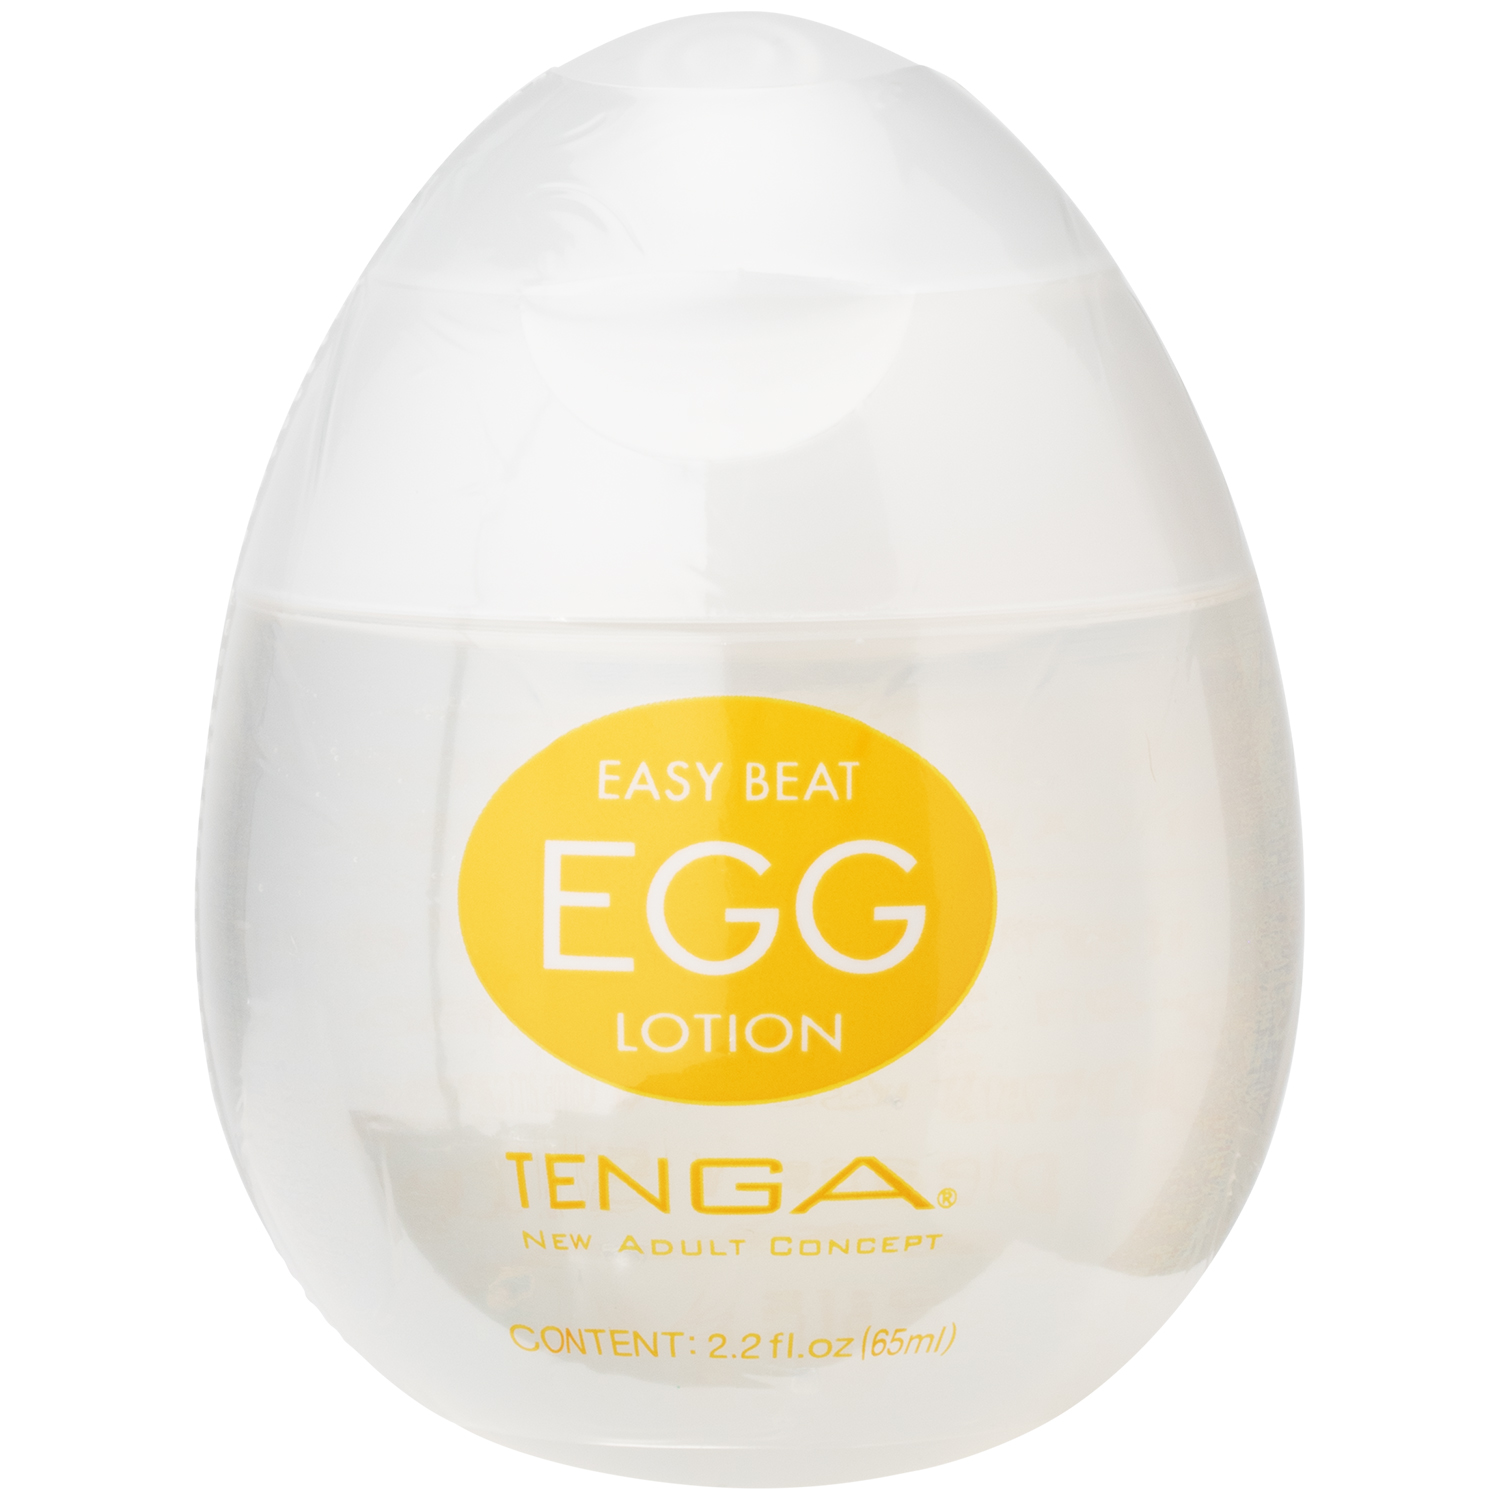 Tenga Egg Lotion Glidecreme 65 ml     - Klar thumbnail